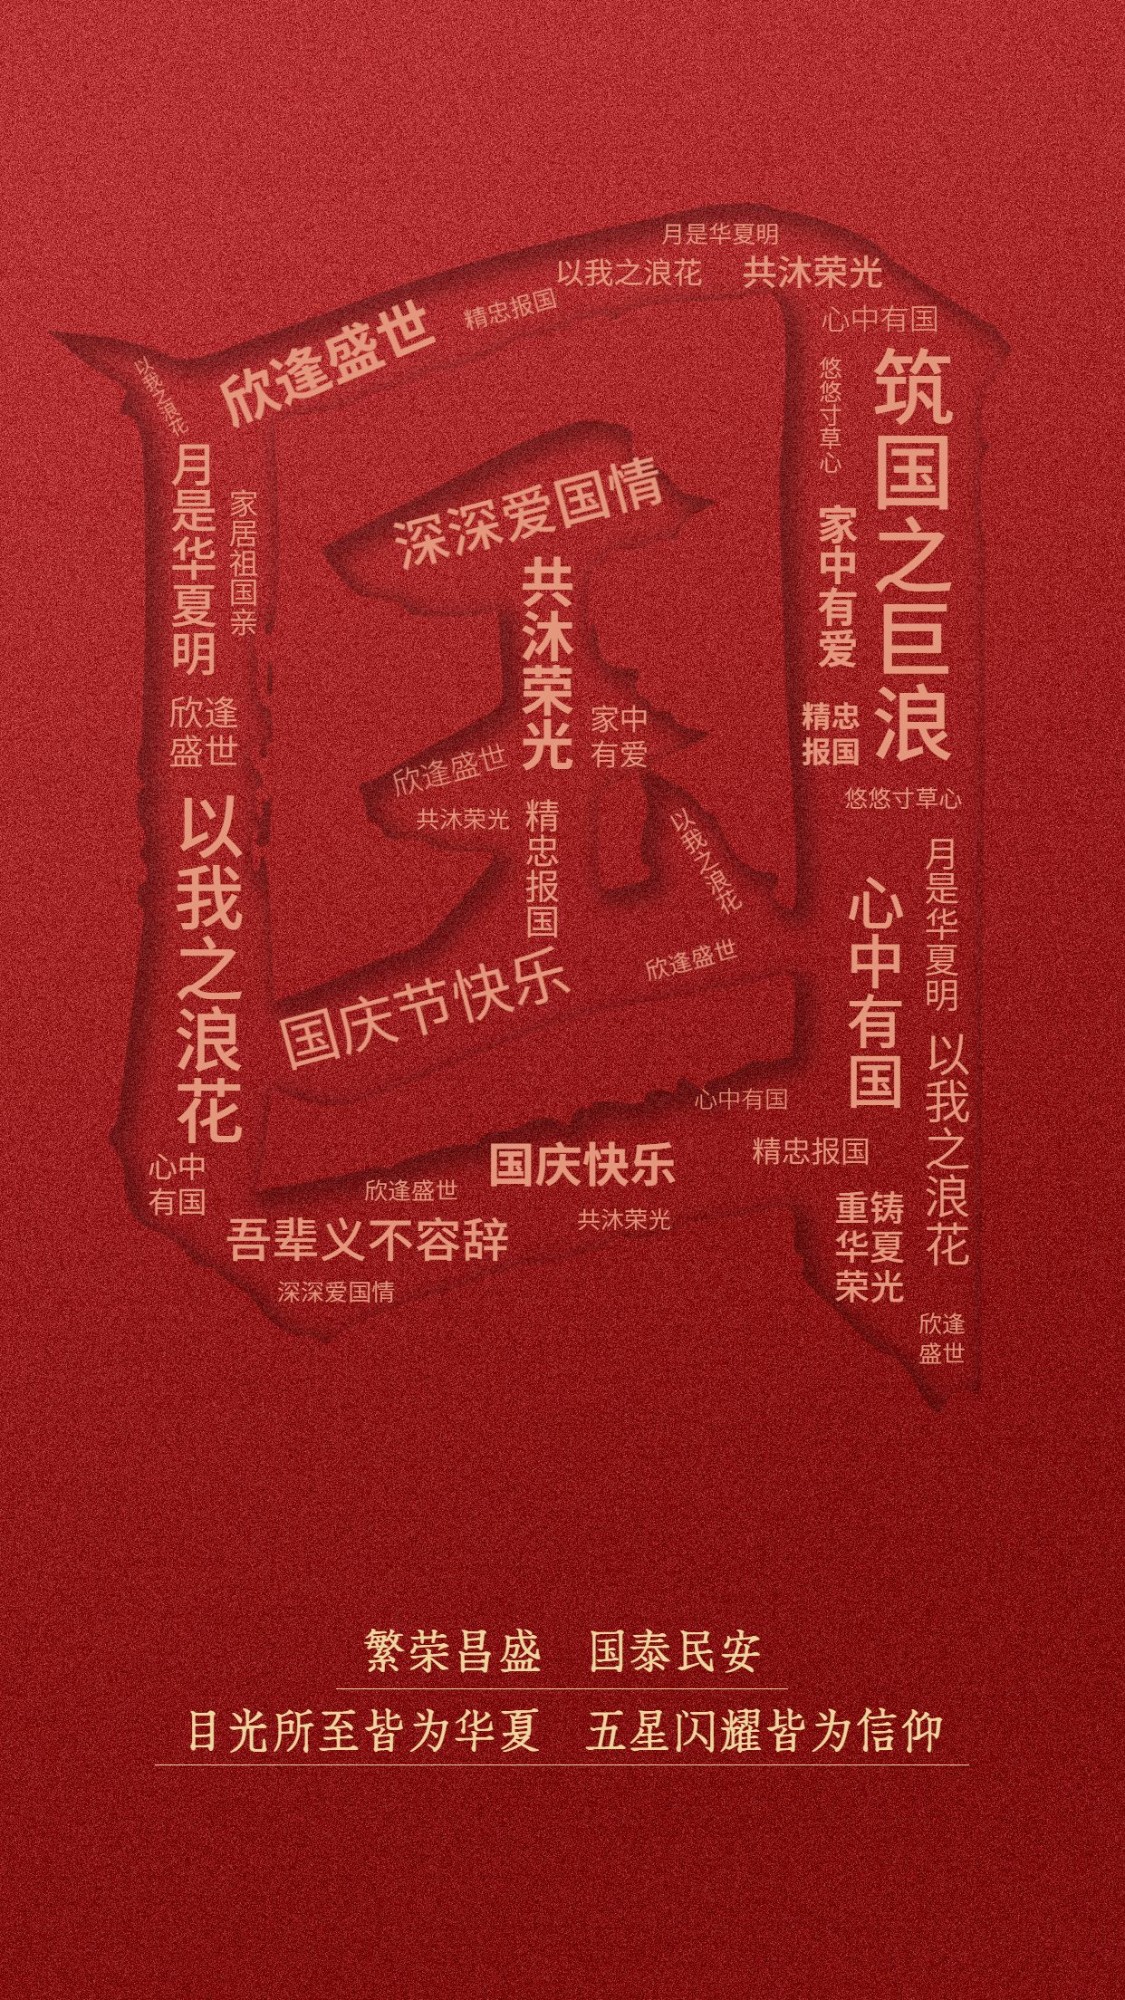 十一国庆节祝福创意合成竖版海报预览效果